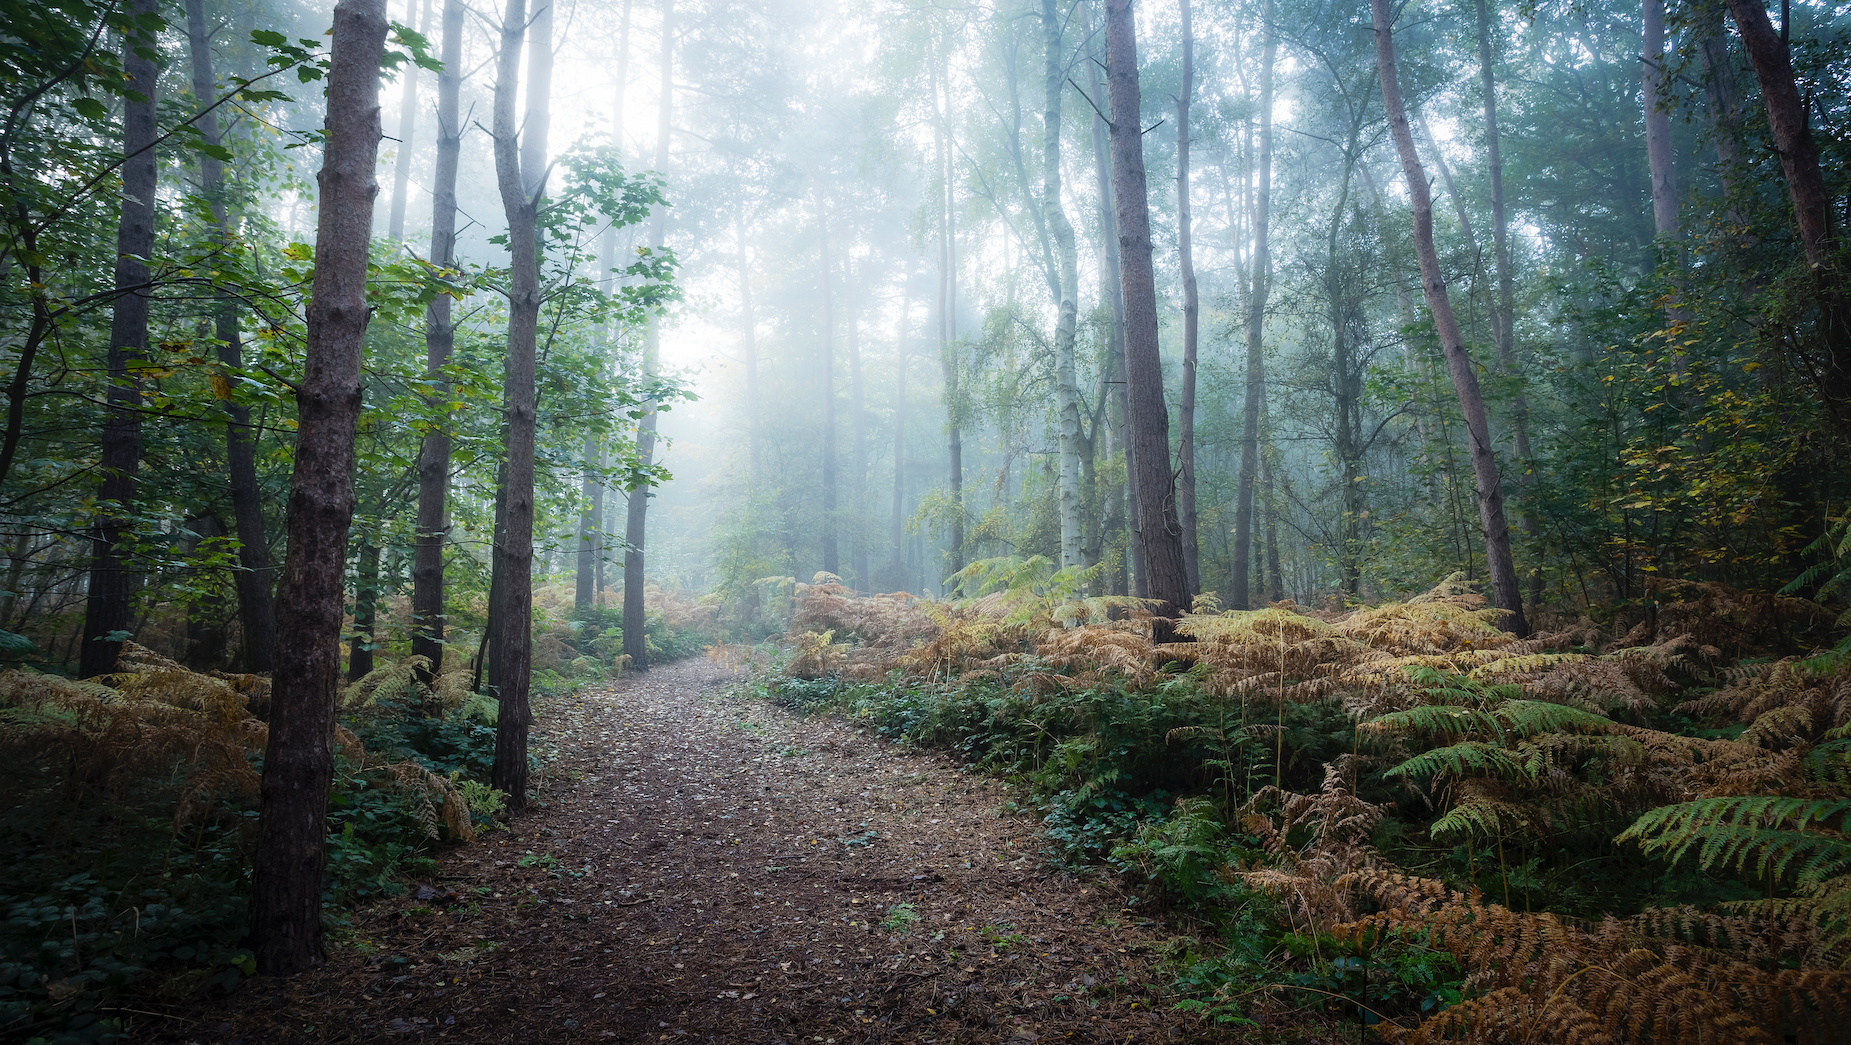 A pathway through a dark foggy wood